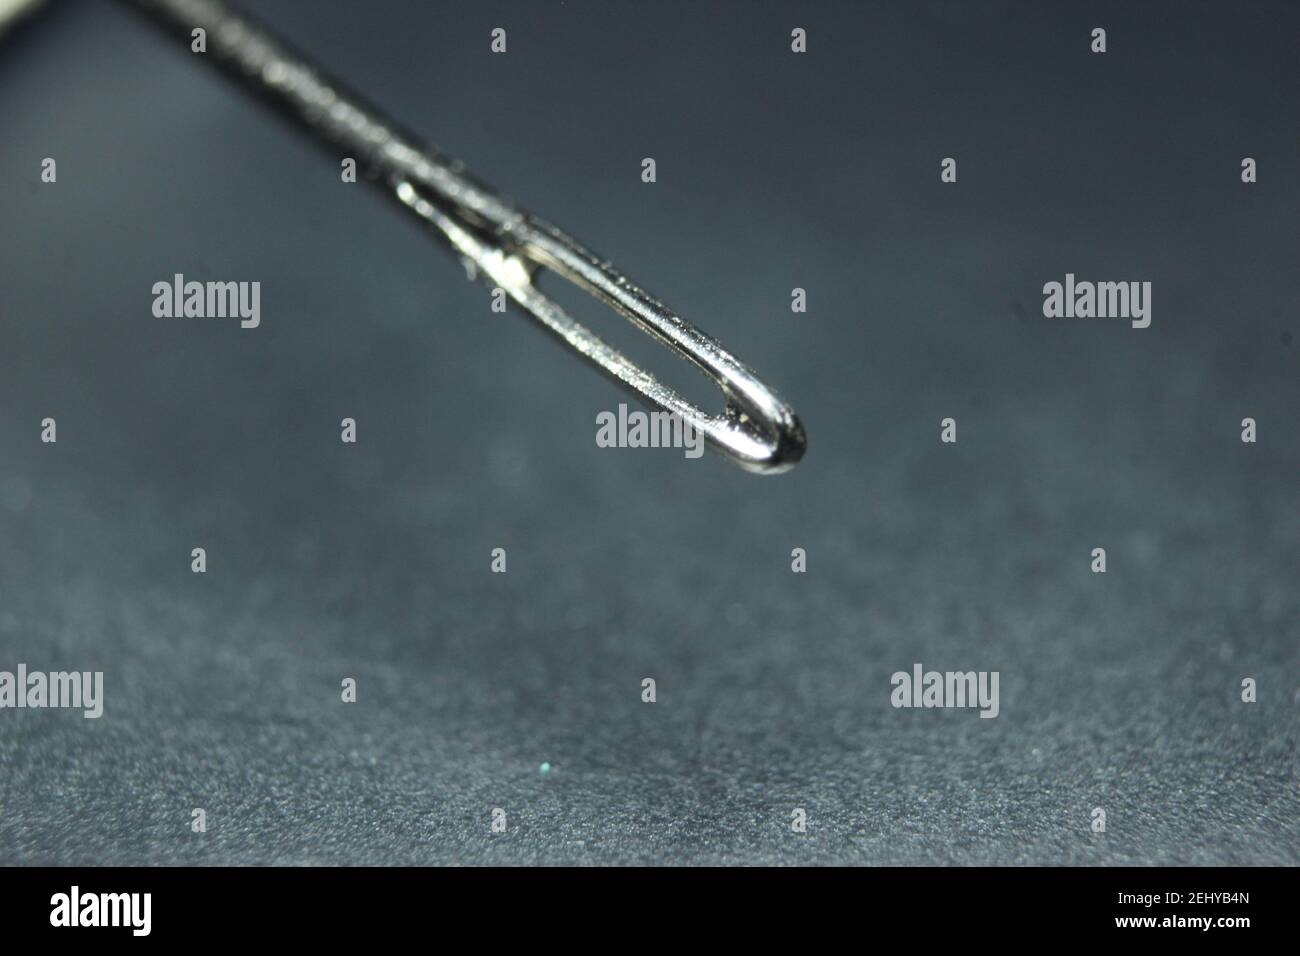 Makroaufnahme der Nähnadel mit leerer Öse gegen eine Schwarzer Hintergrund Stockfoto